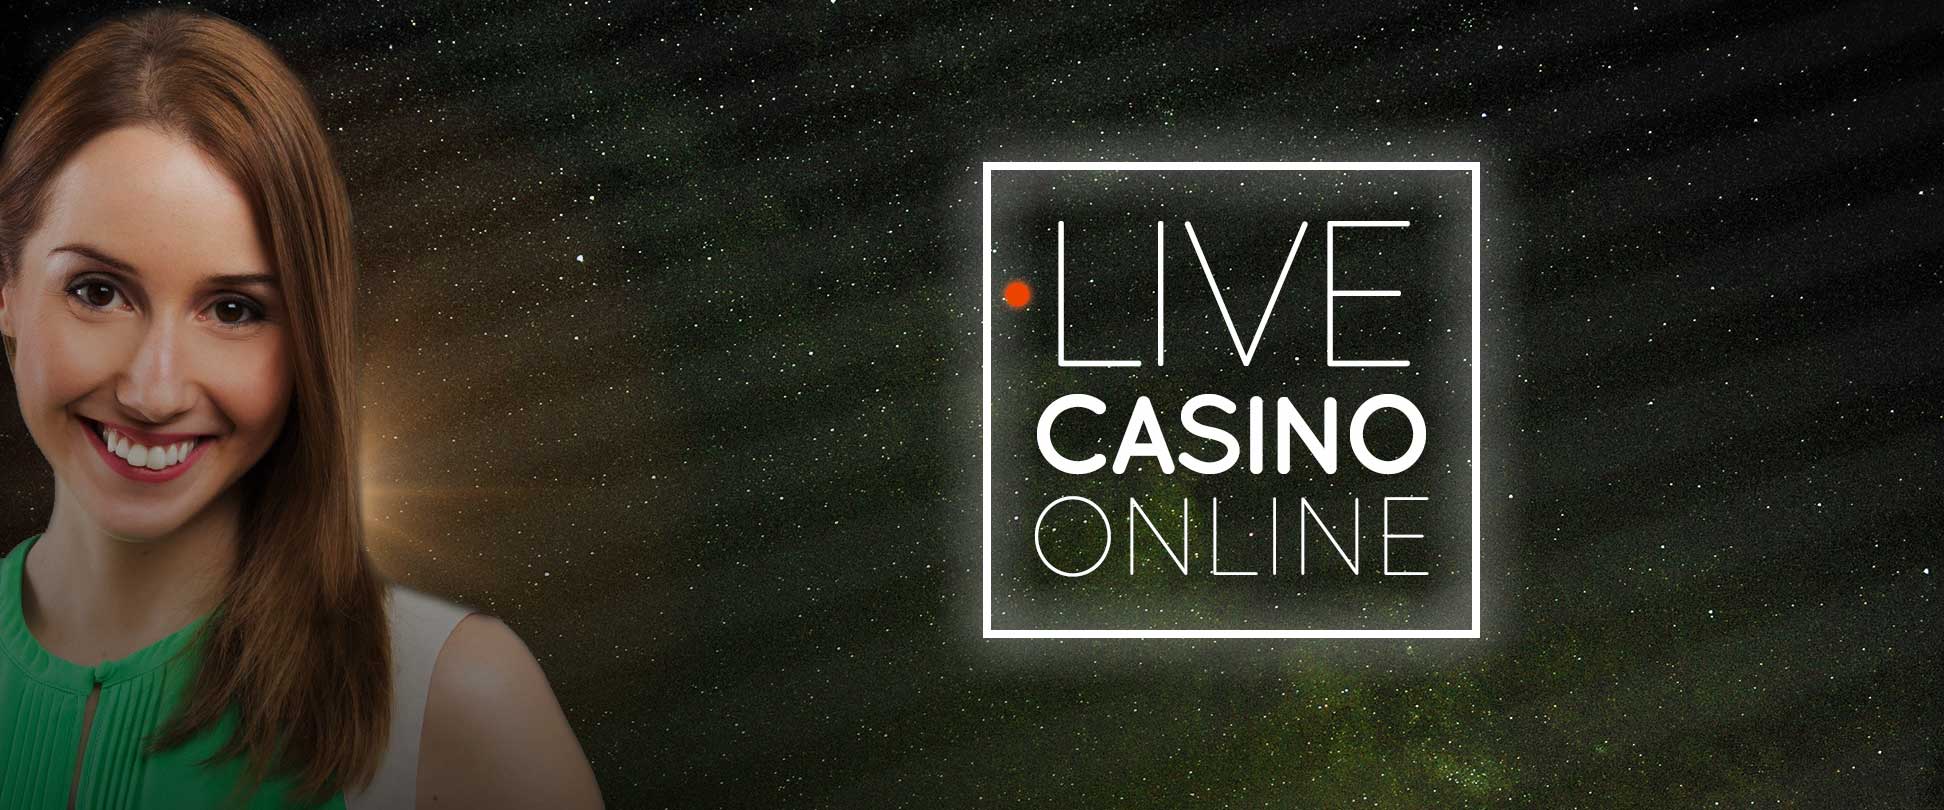 live casino online header